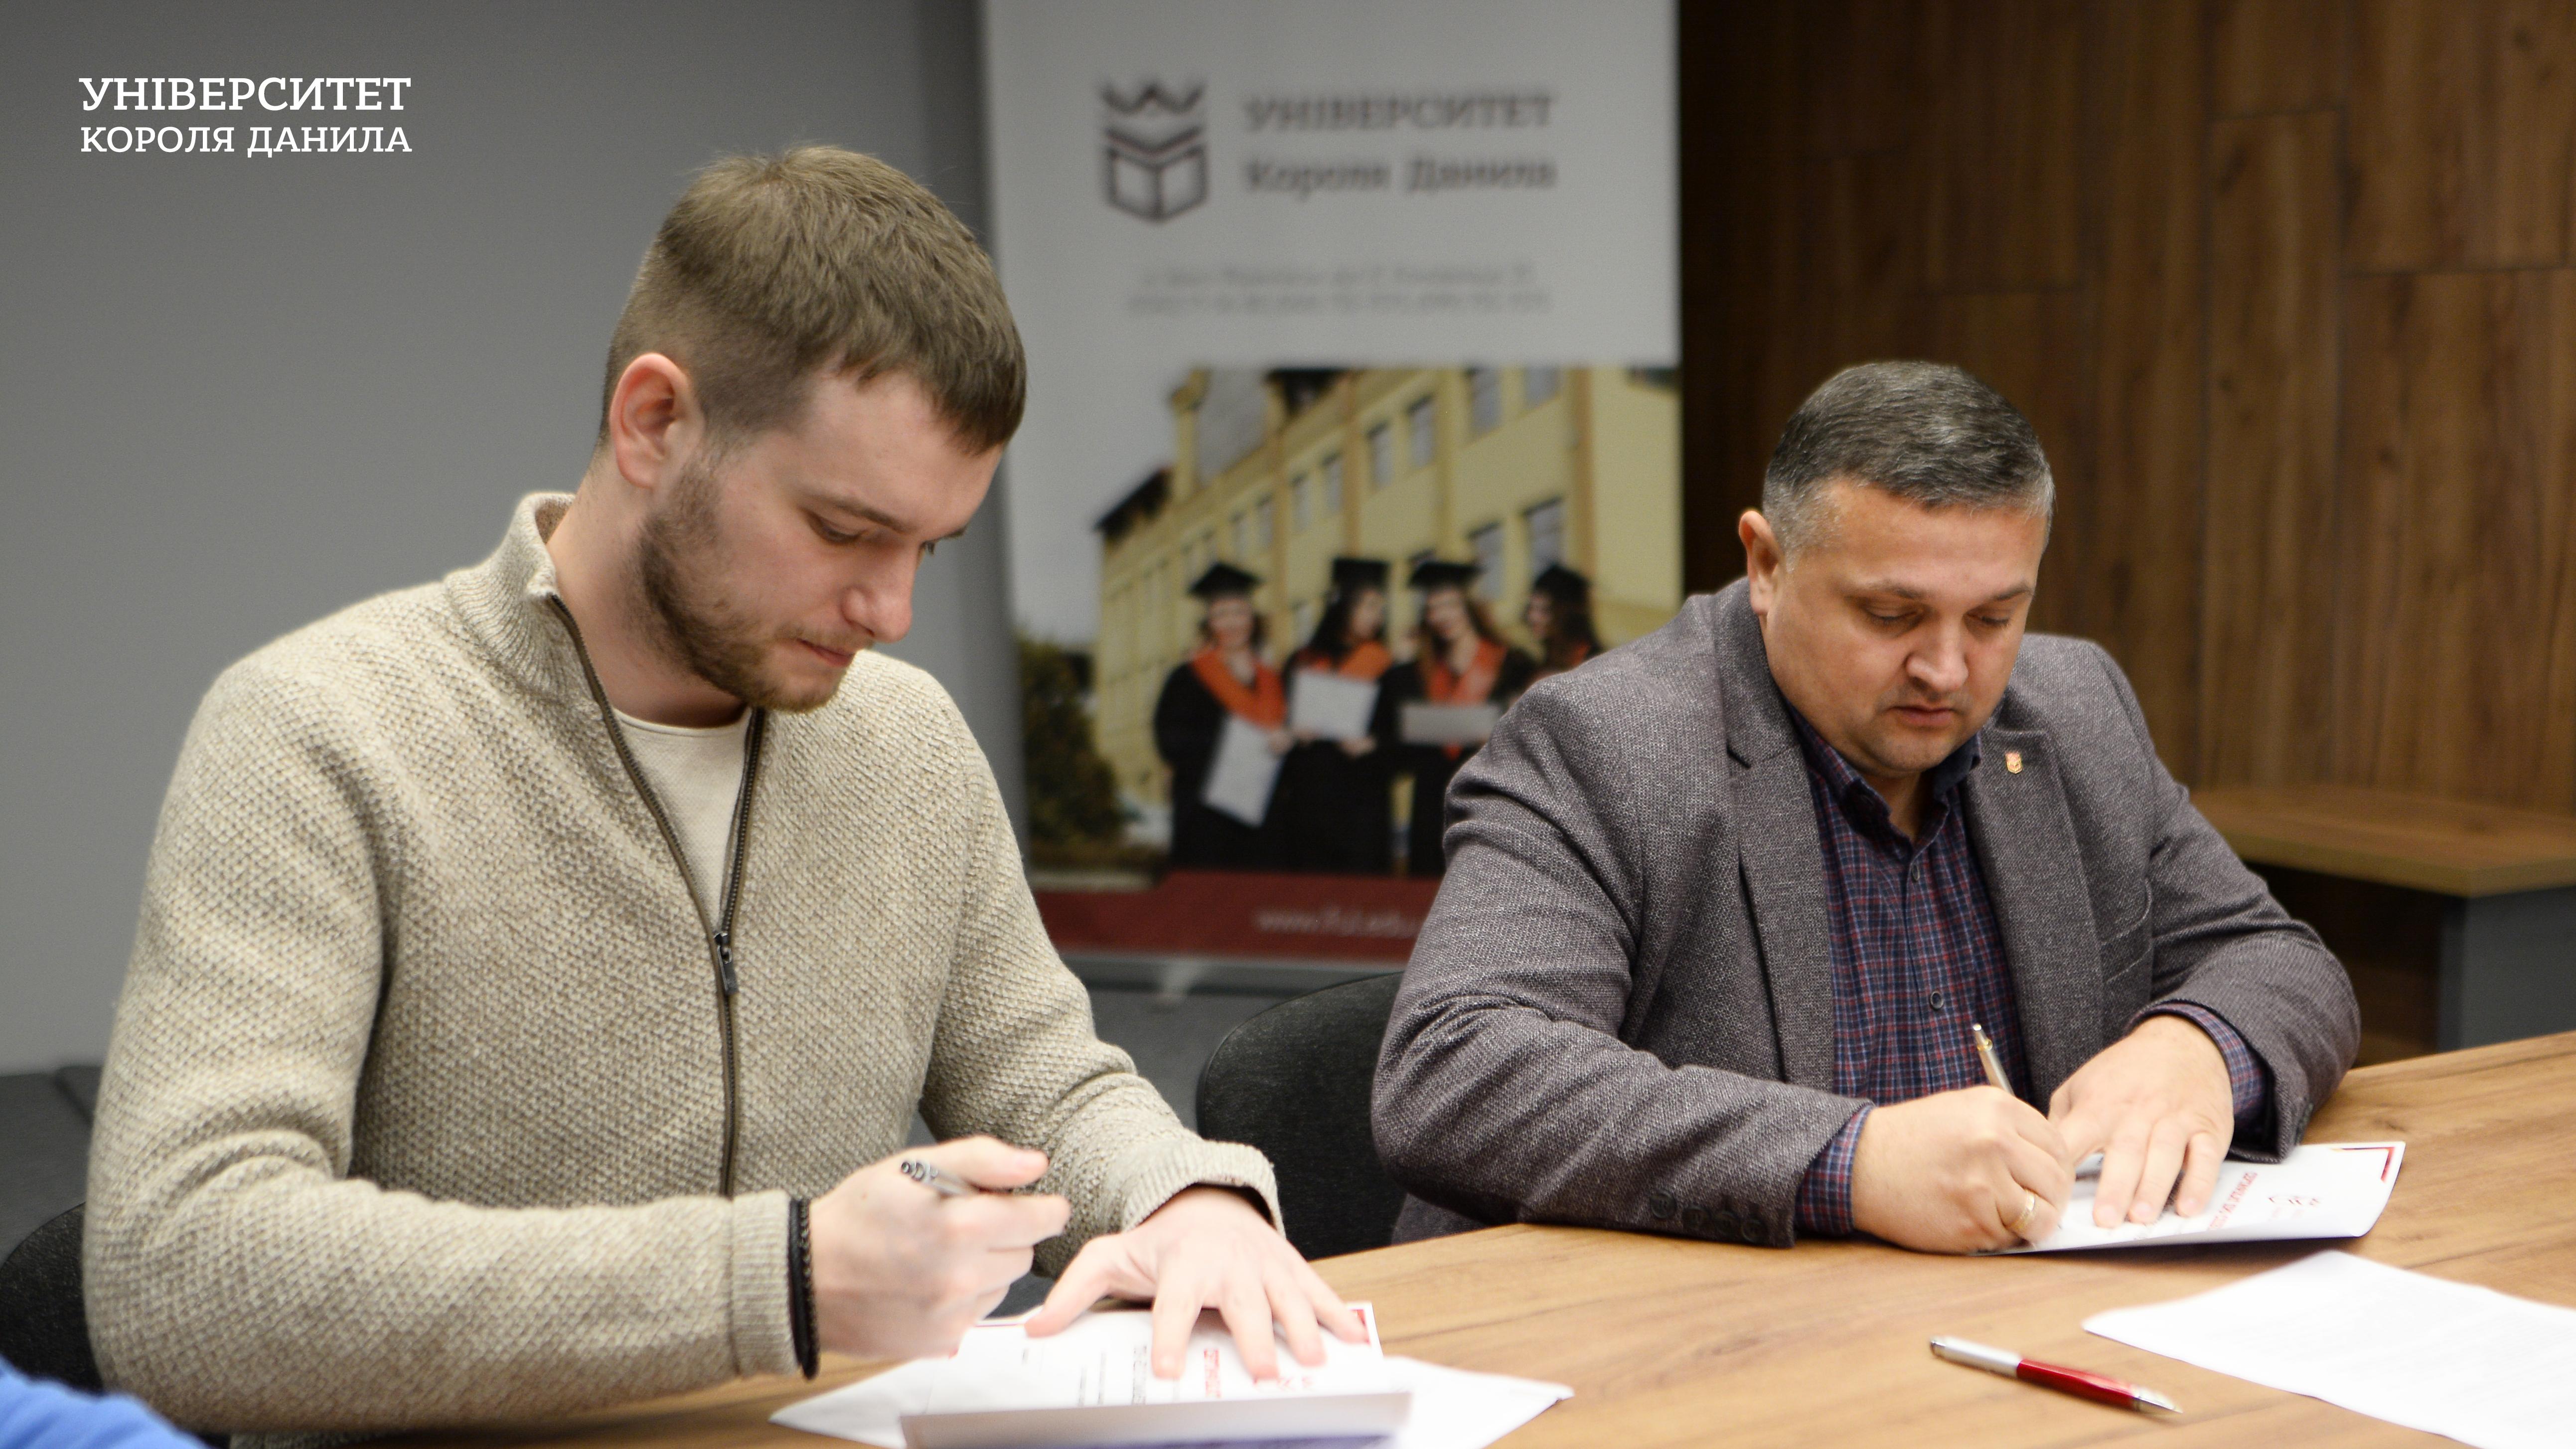 Університет Короля Данила підписав договір про співпрацю з Uvik software